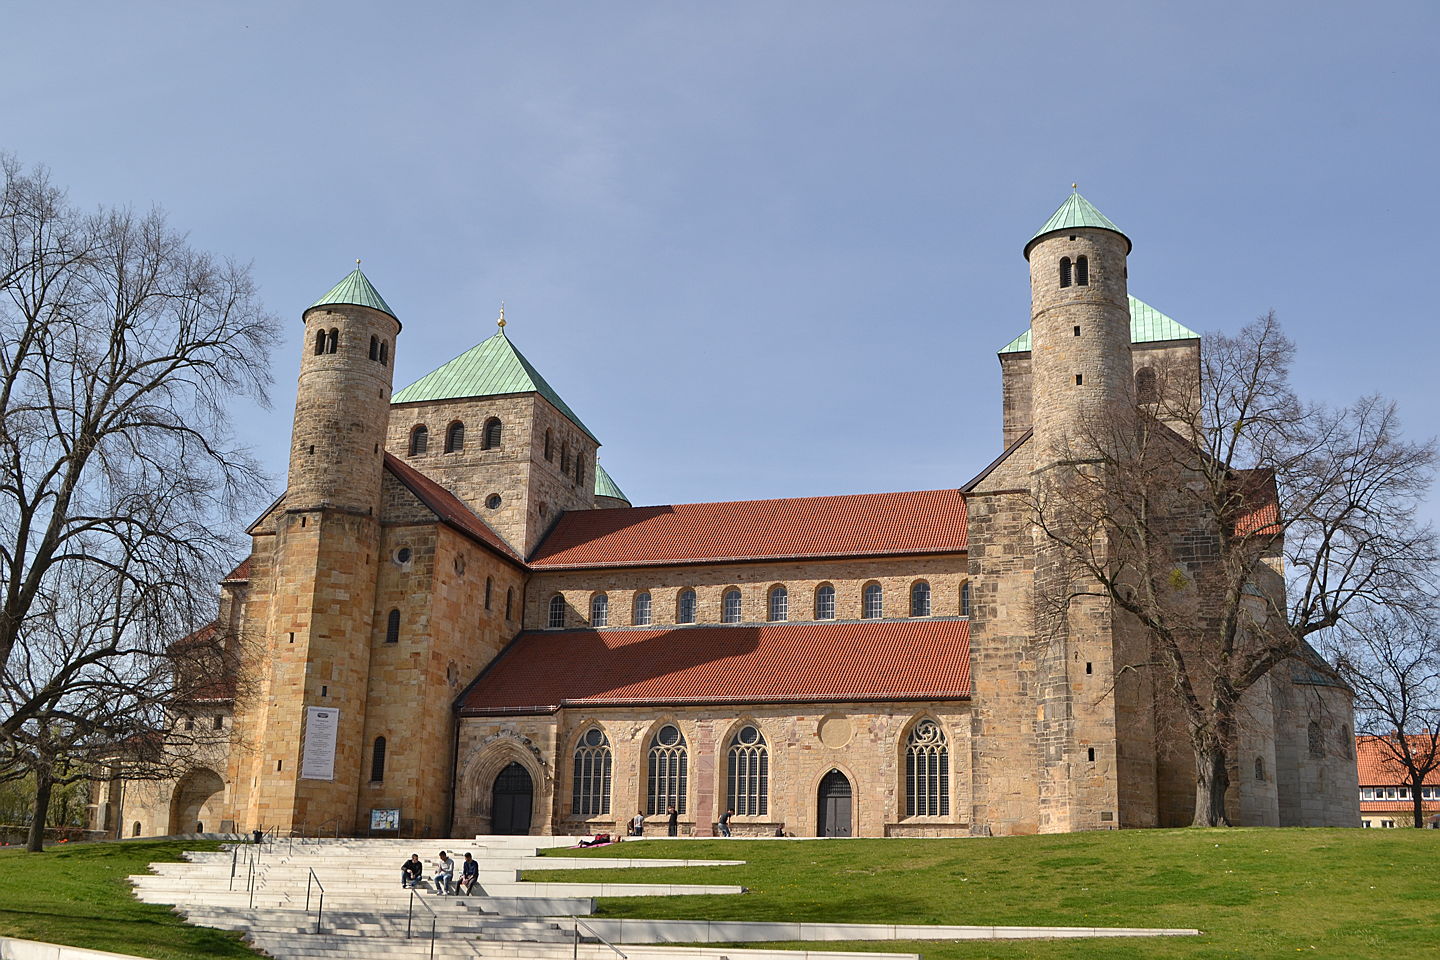  Hildesheim
- Hildesheimer Dom